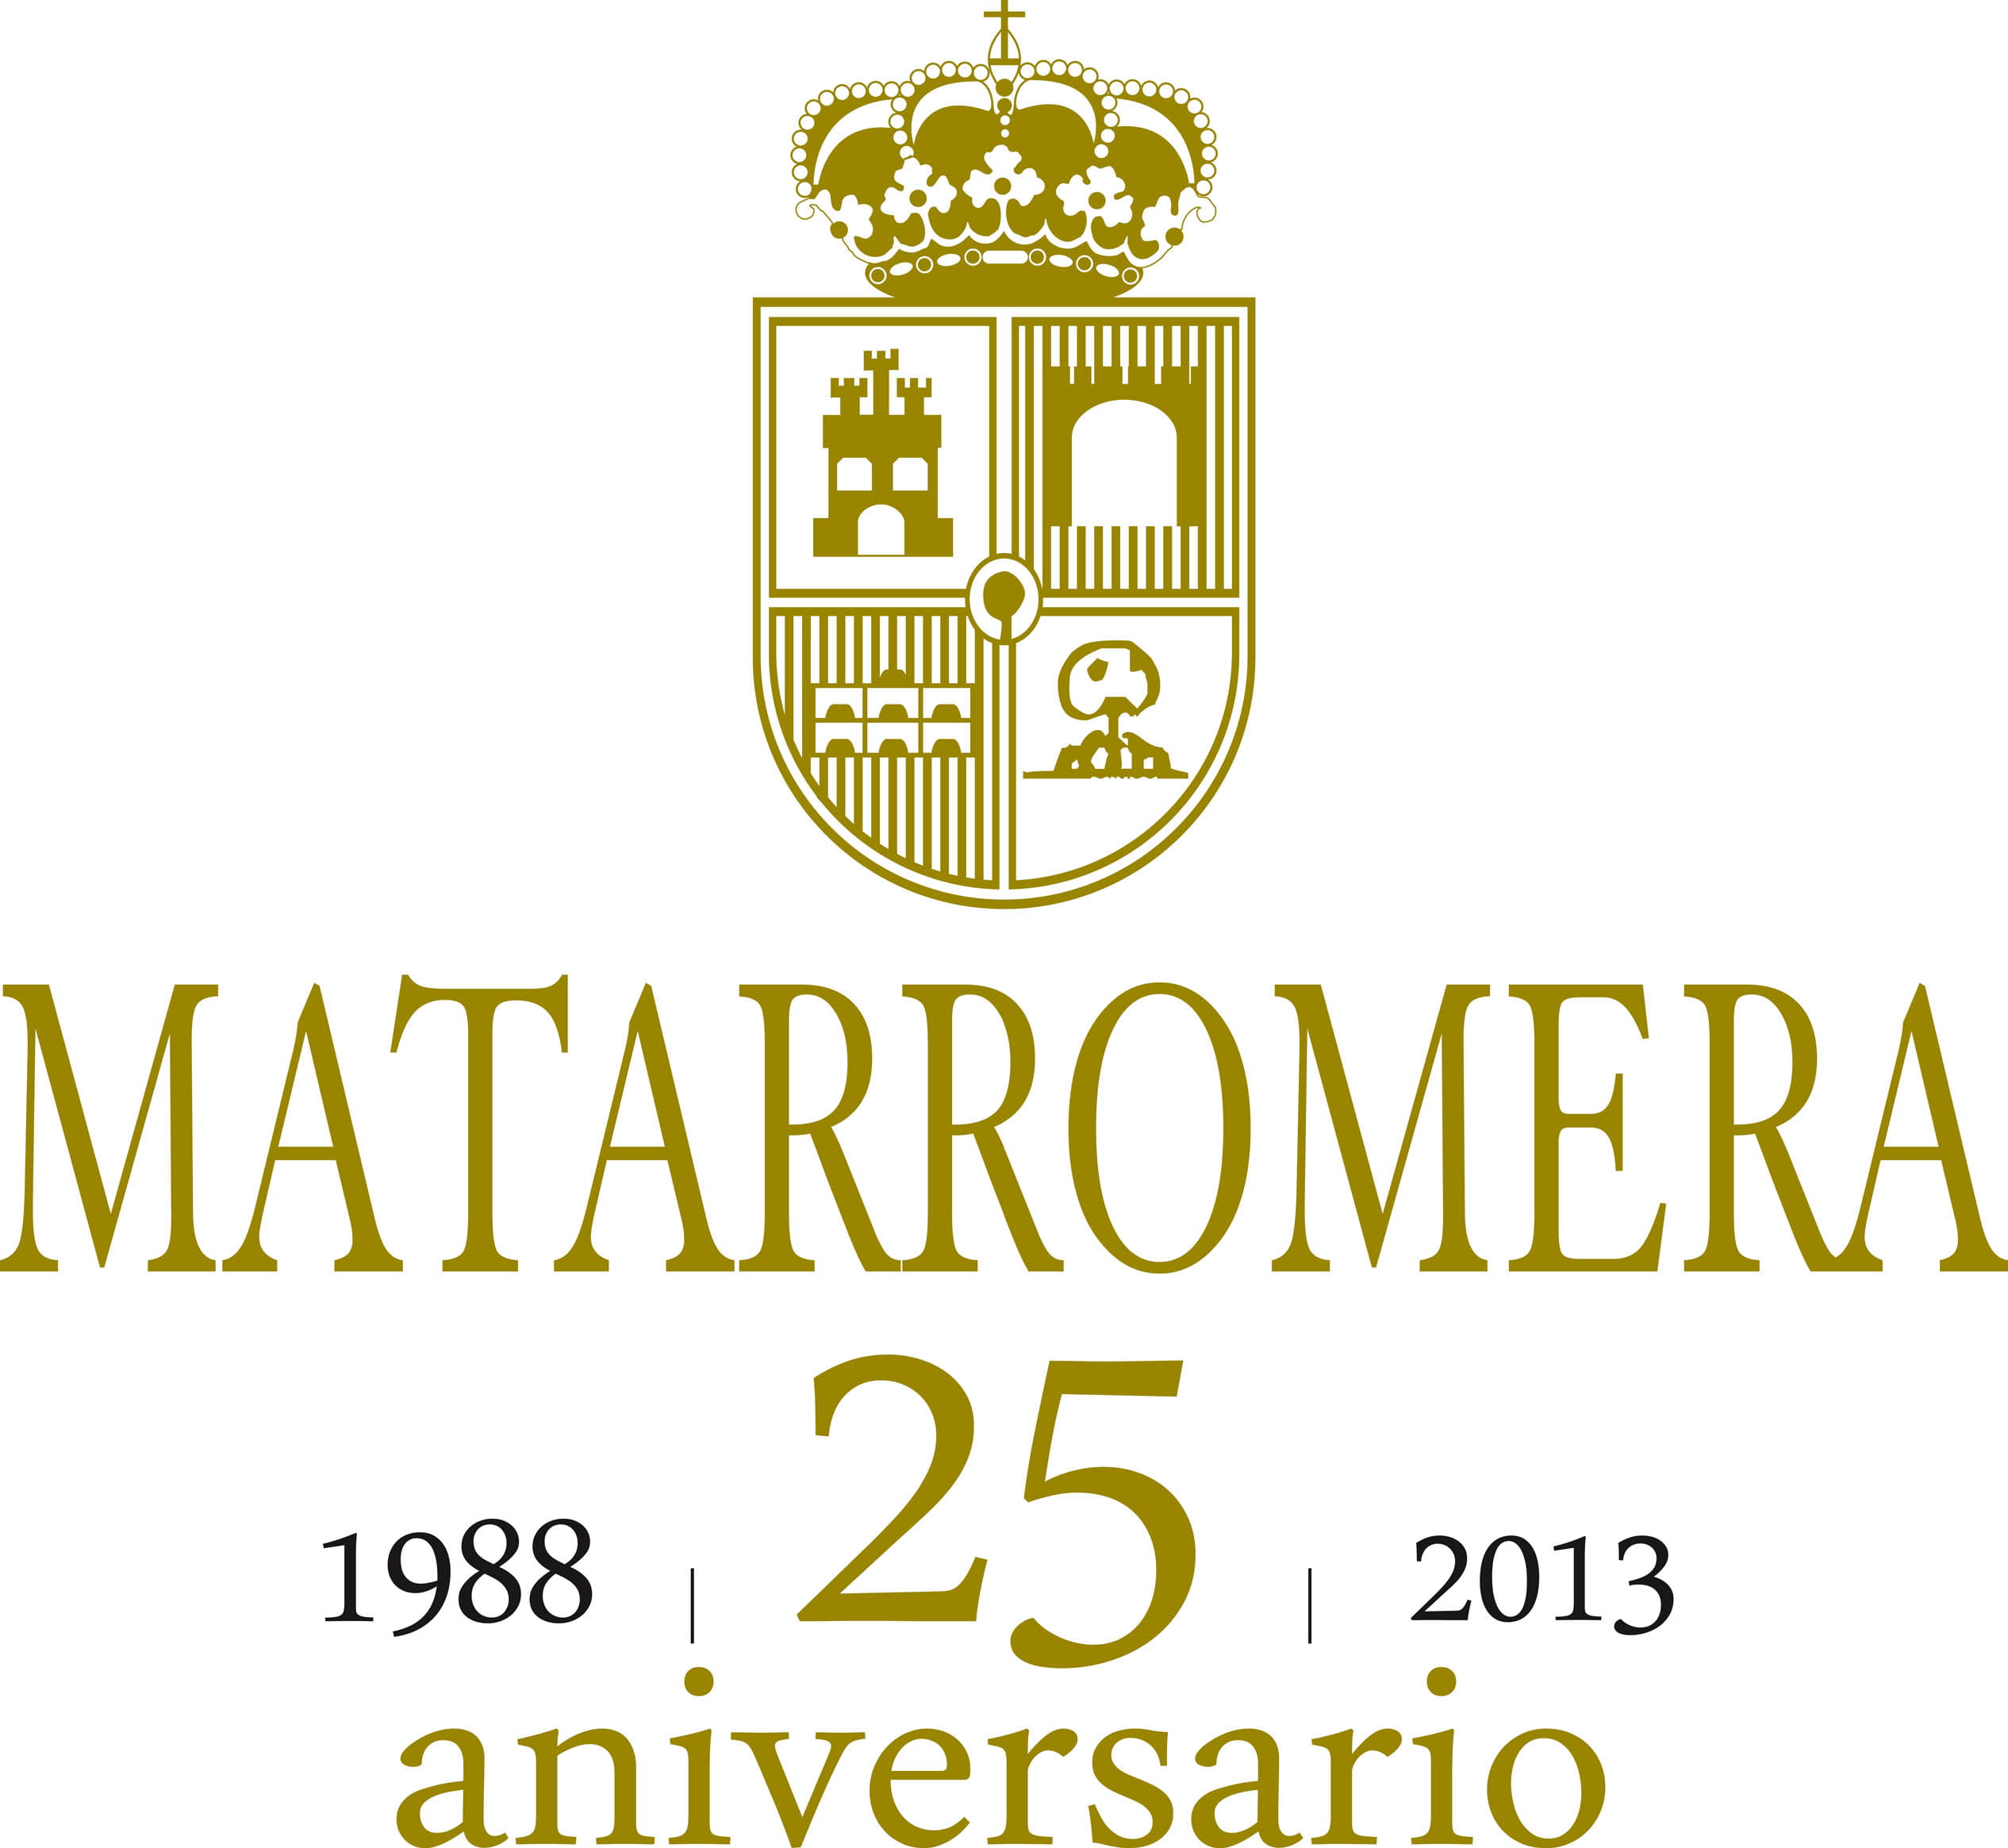 Matarromera celebra su 25 Aniversario con una serie de actividades a lo largo de todo el 2013